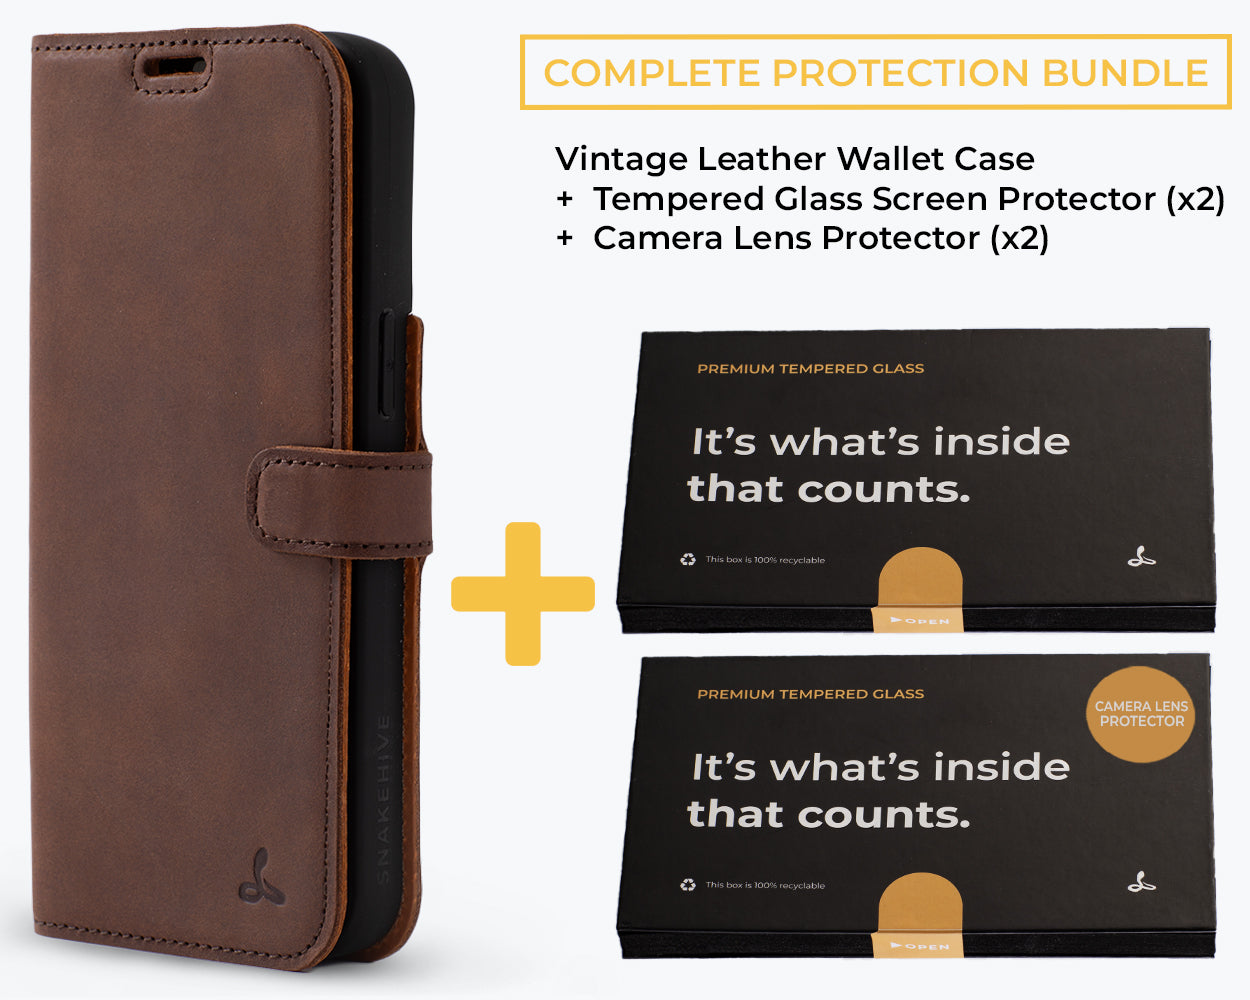 Complete Protection Bundle (Vintage Wallet) - Samsung G